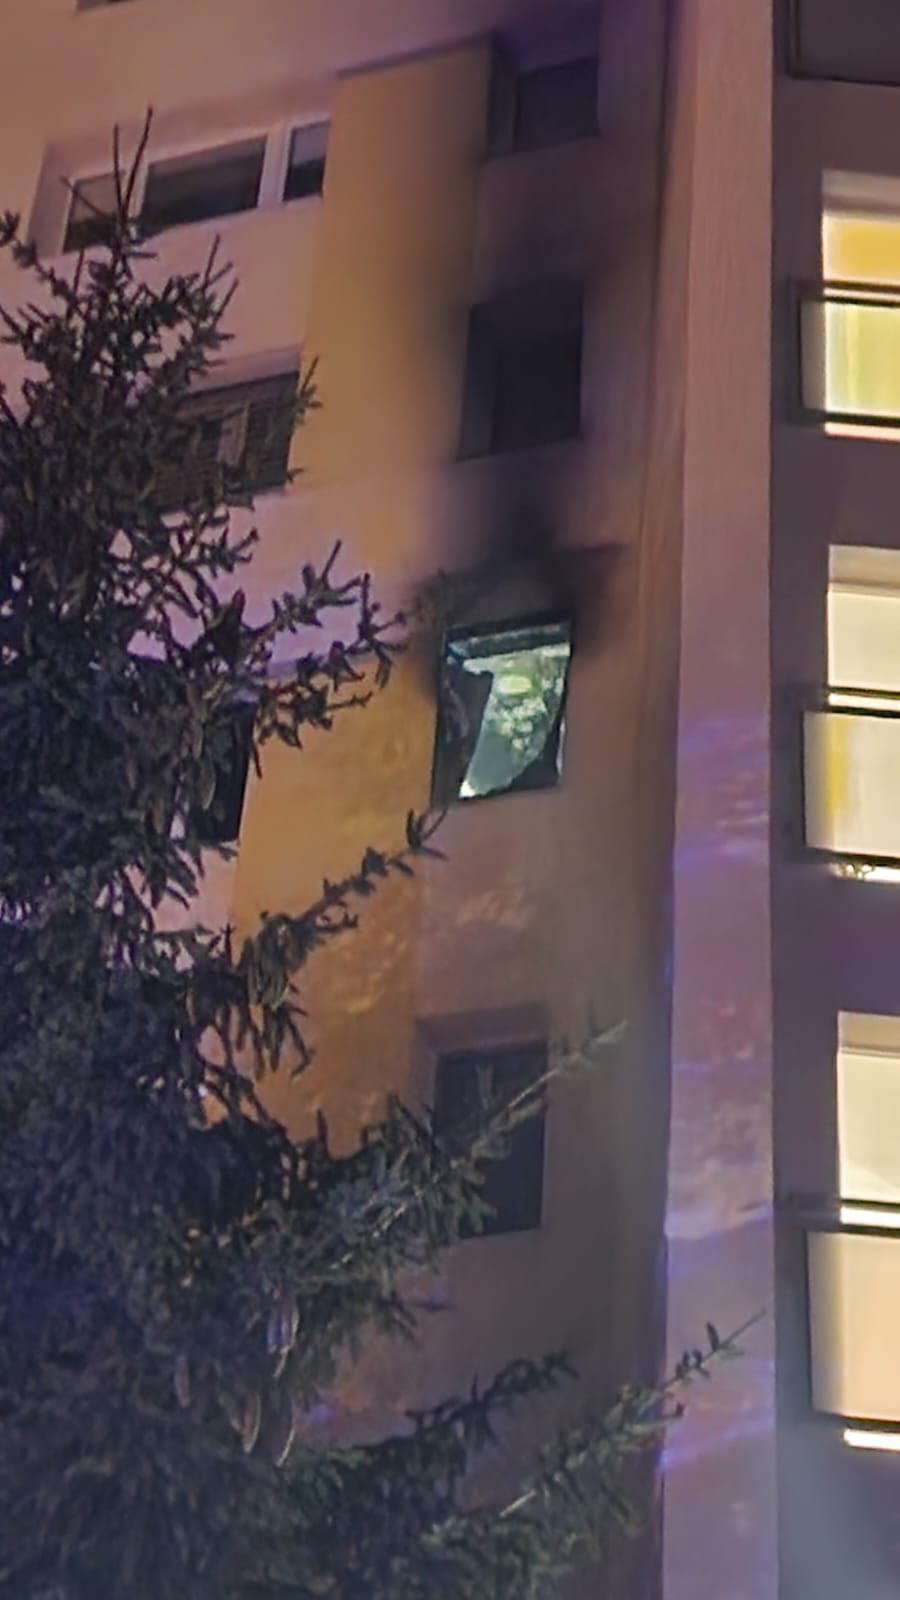 01 - Požiar bytu v Nitre spôsobil škodu vo výške 60 000 eur